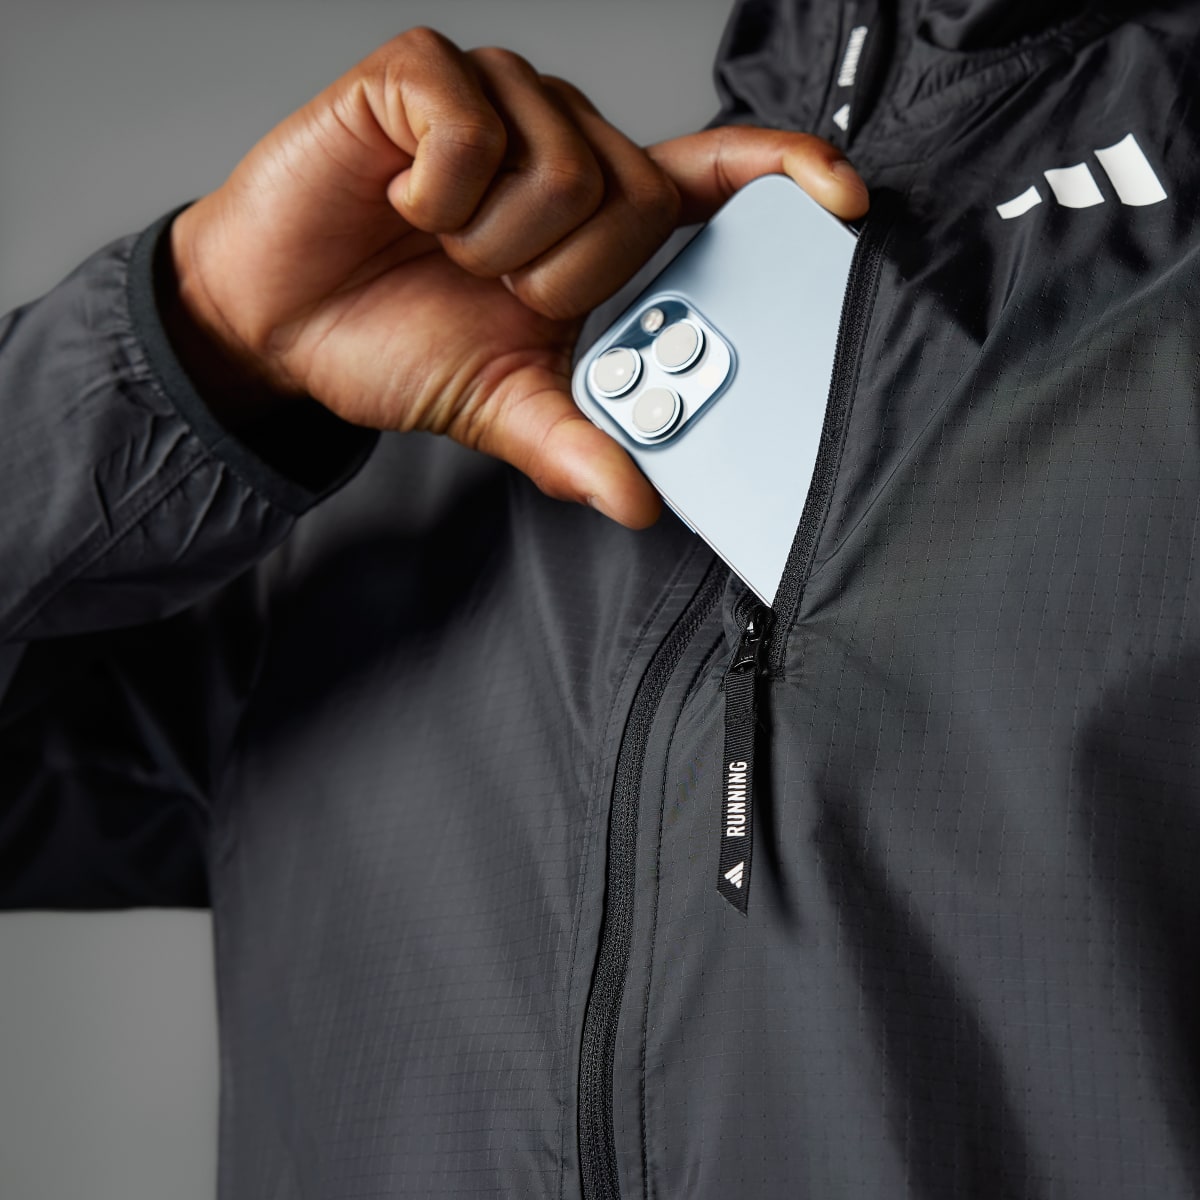 Adidas Own the Run 3-Stripes Jacket. 5